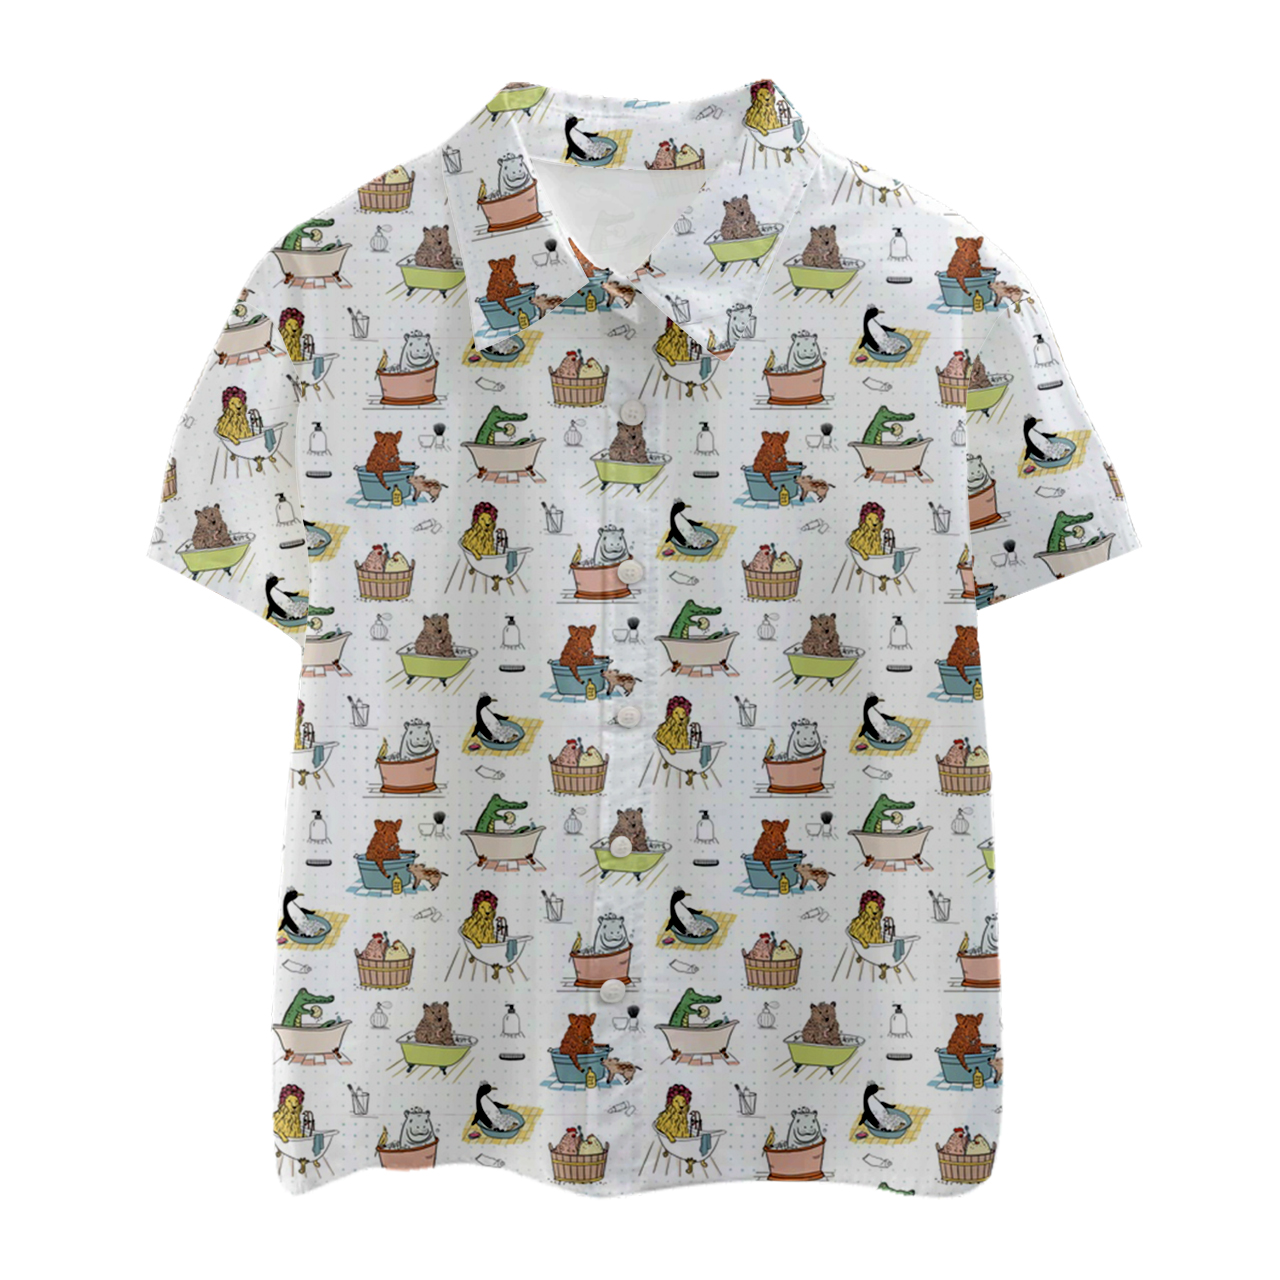 Animals Bathroom Kids Button Shirt